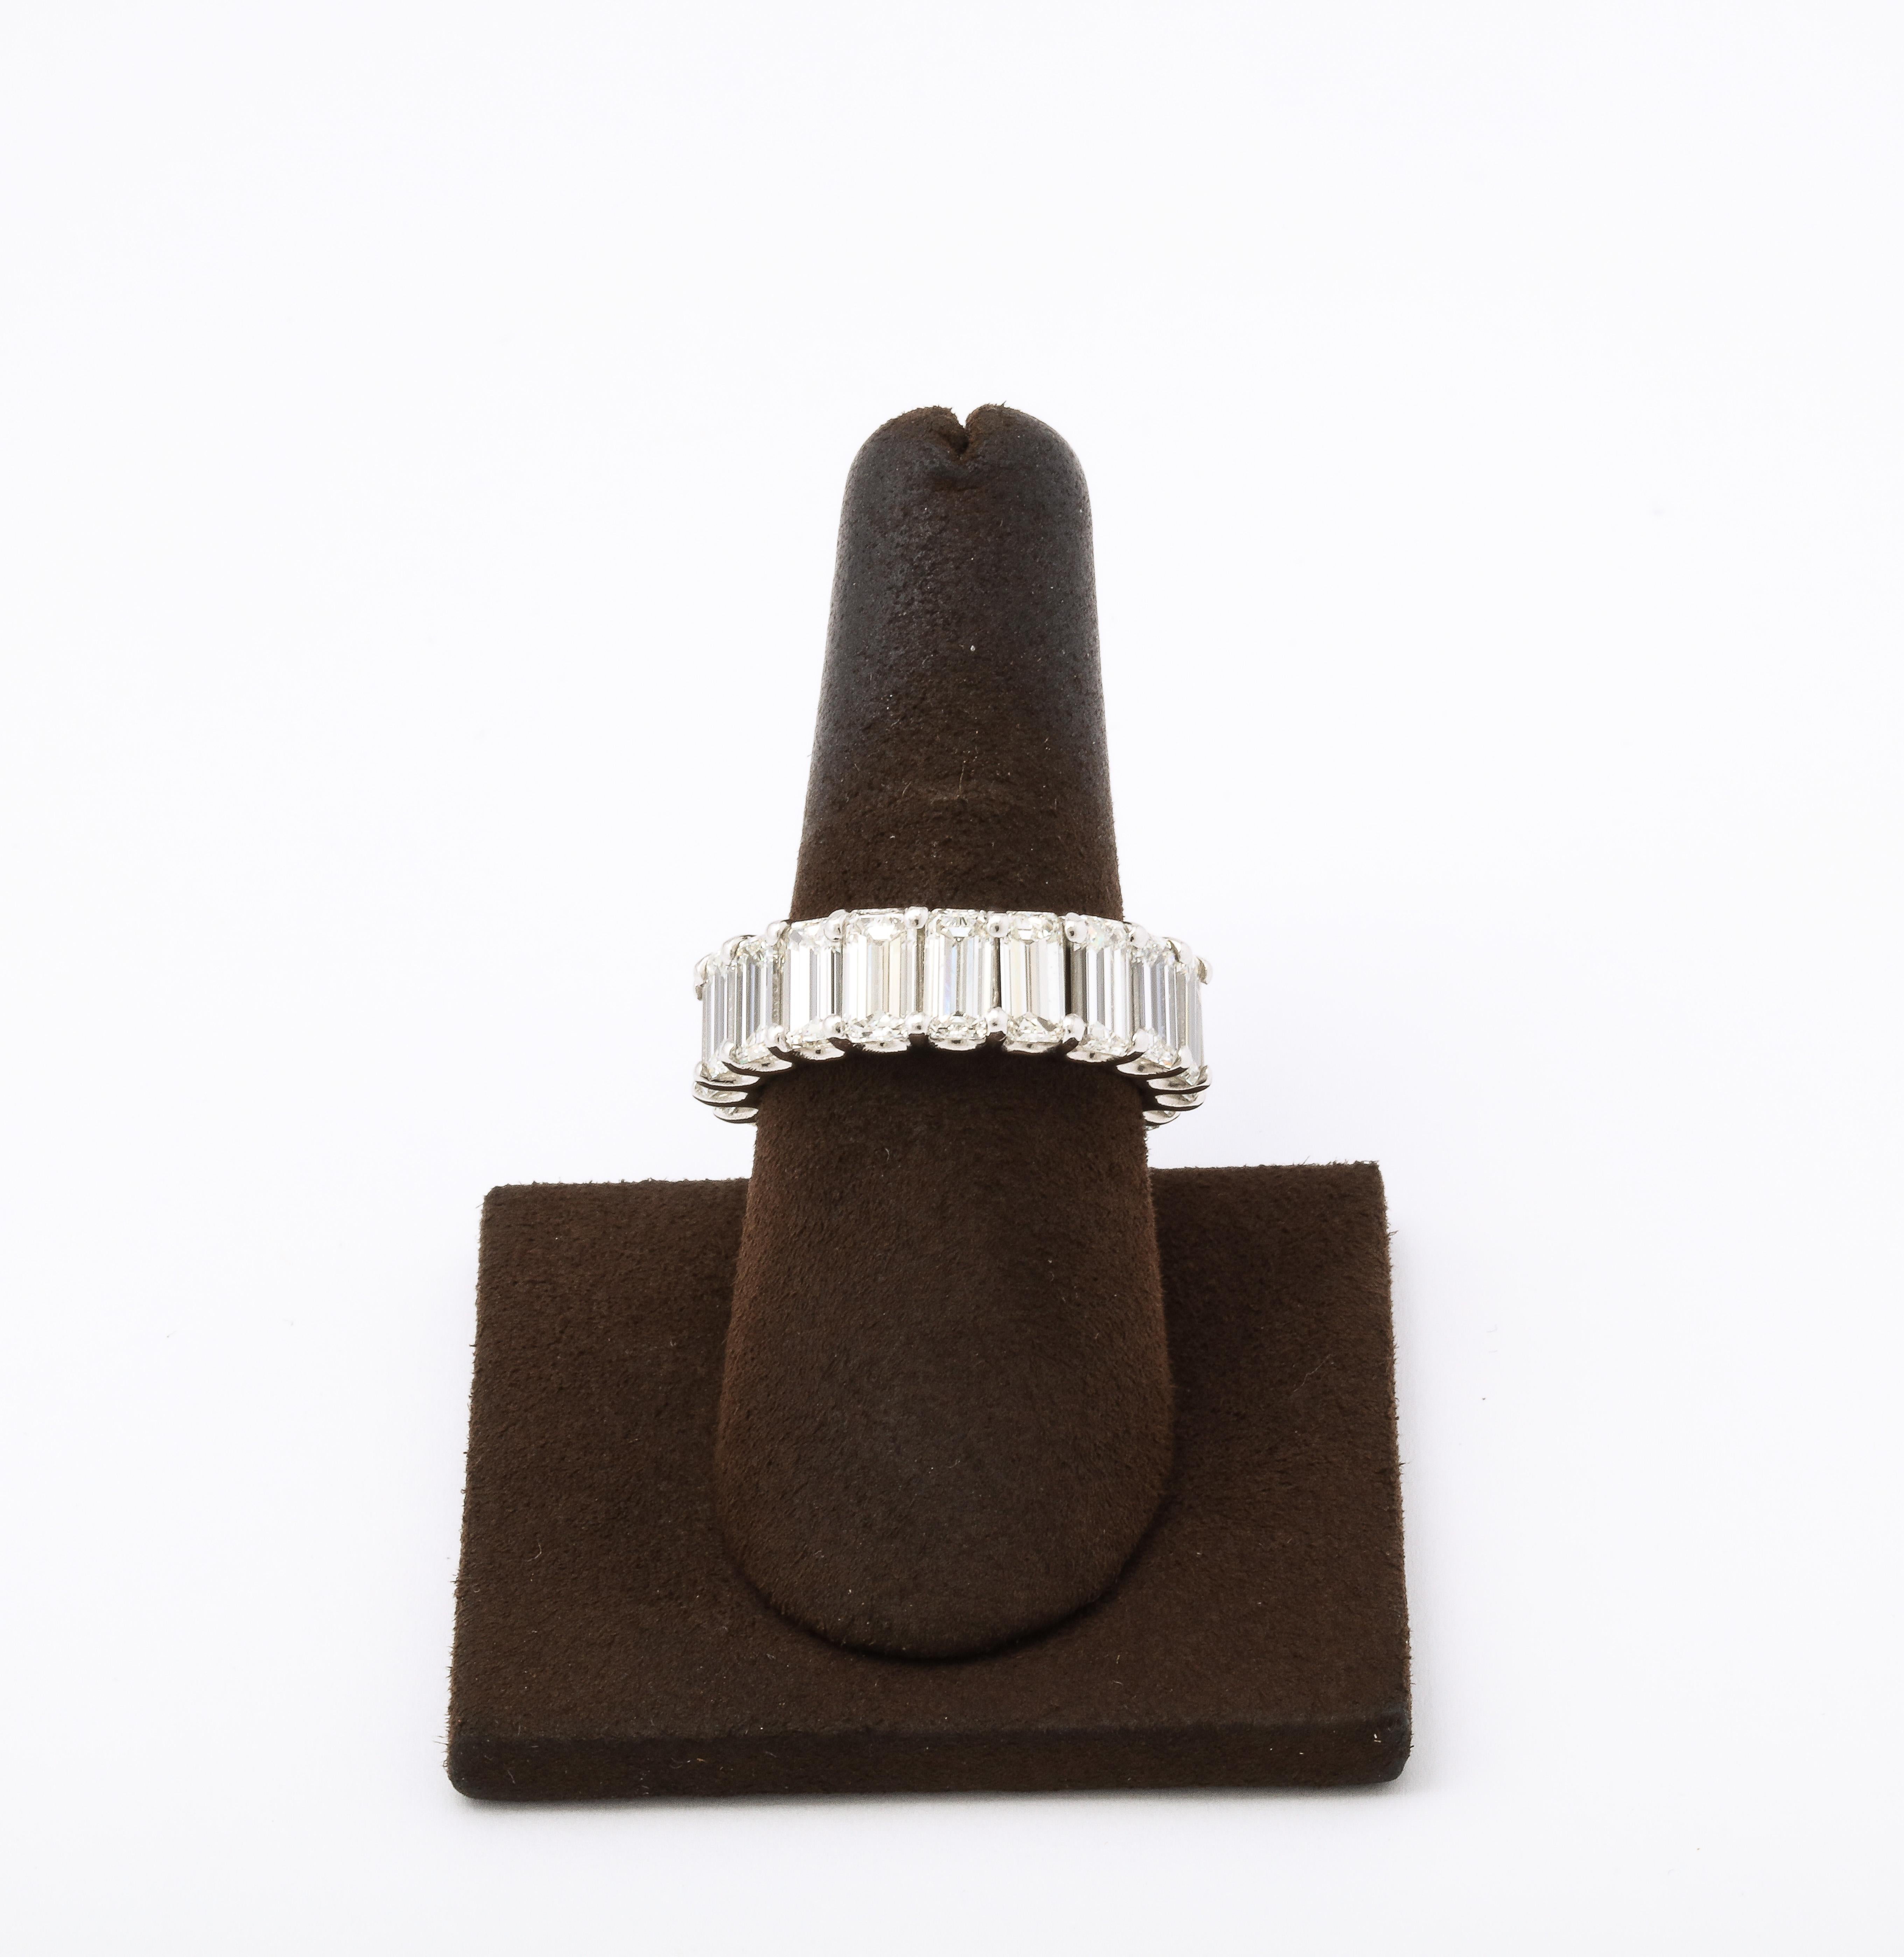 Un FABULOUS bracelet éternité en diamant taille émeraude ! !!

Plus de 11,50 carats d'émeraudes blanches allongées serties dans une monture en platine personnalisée 